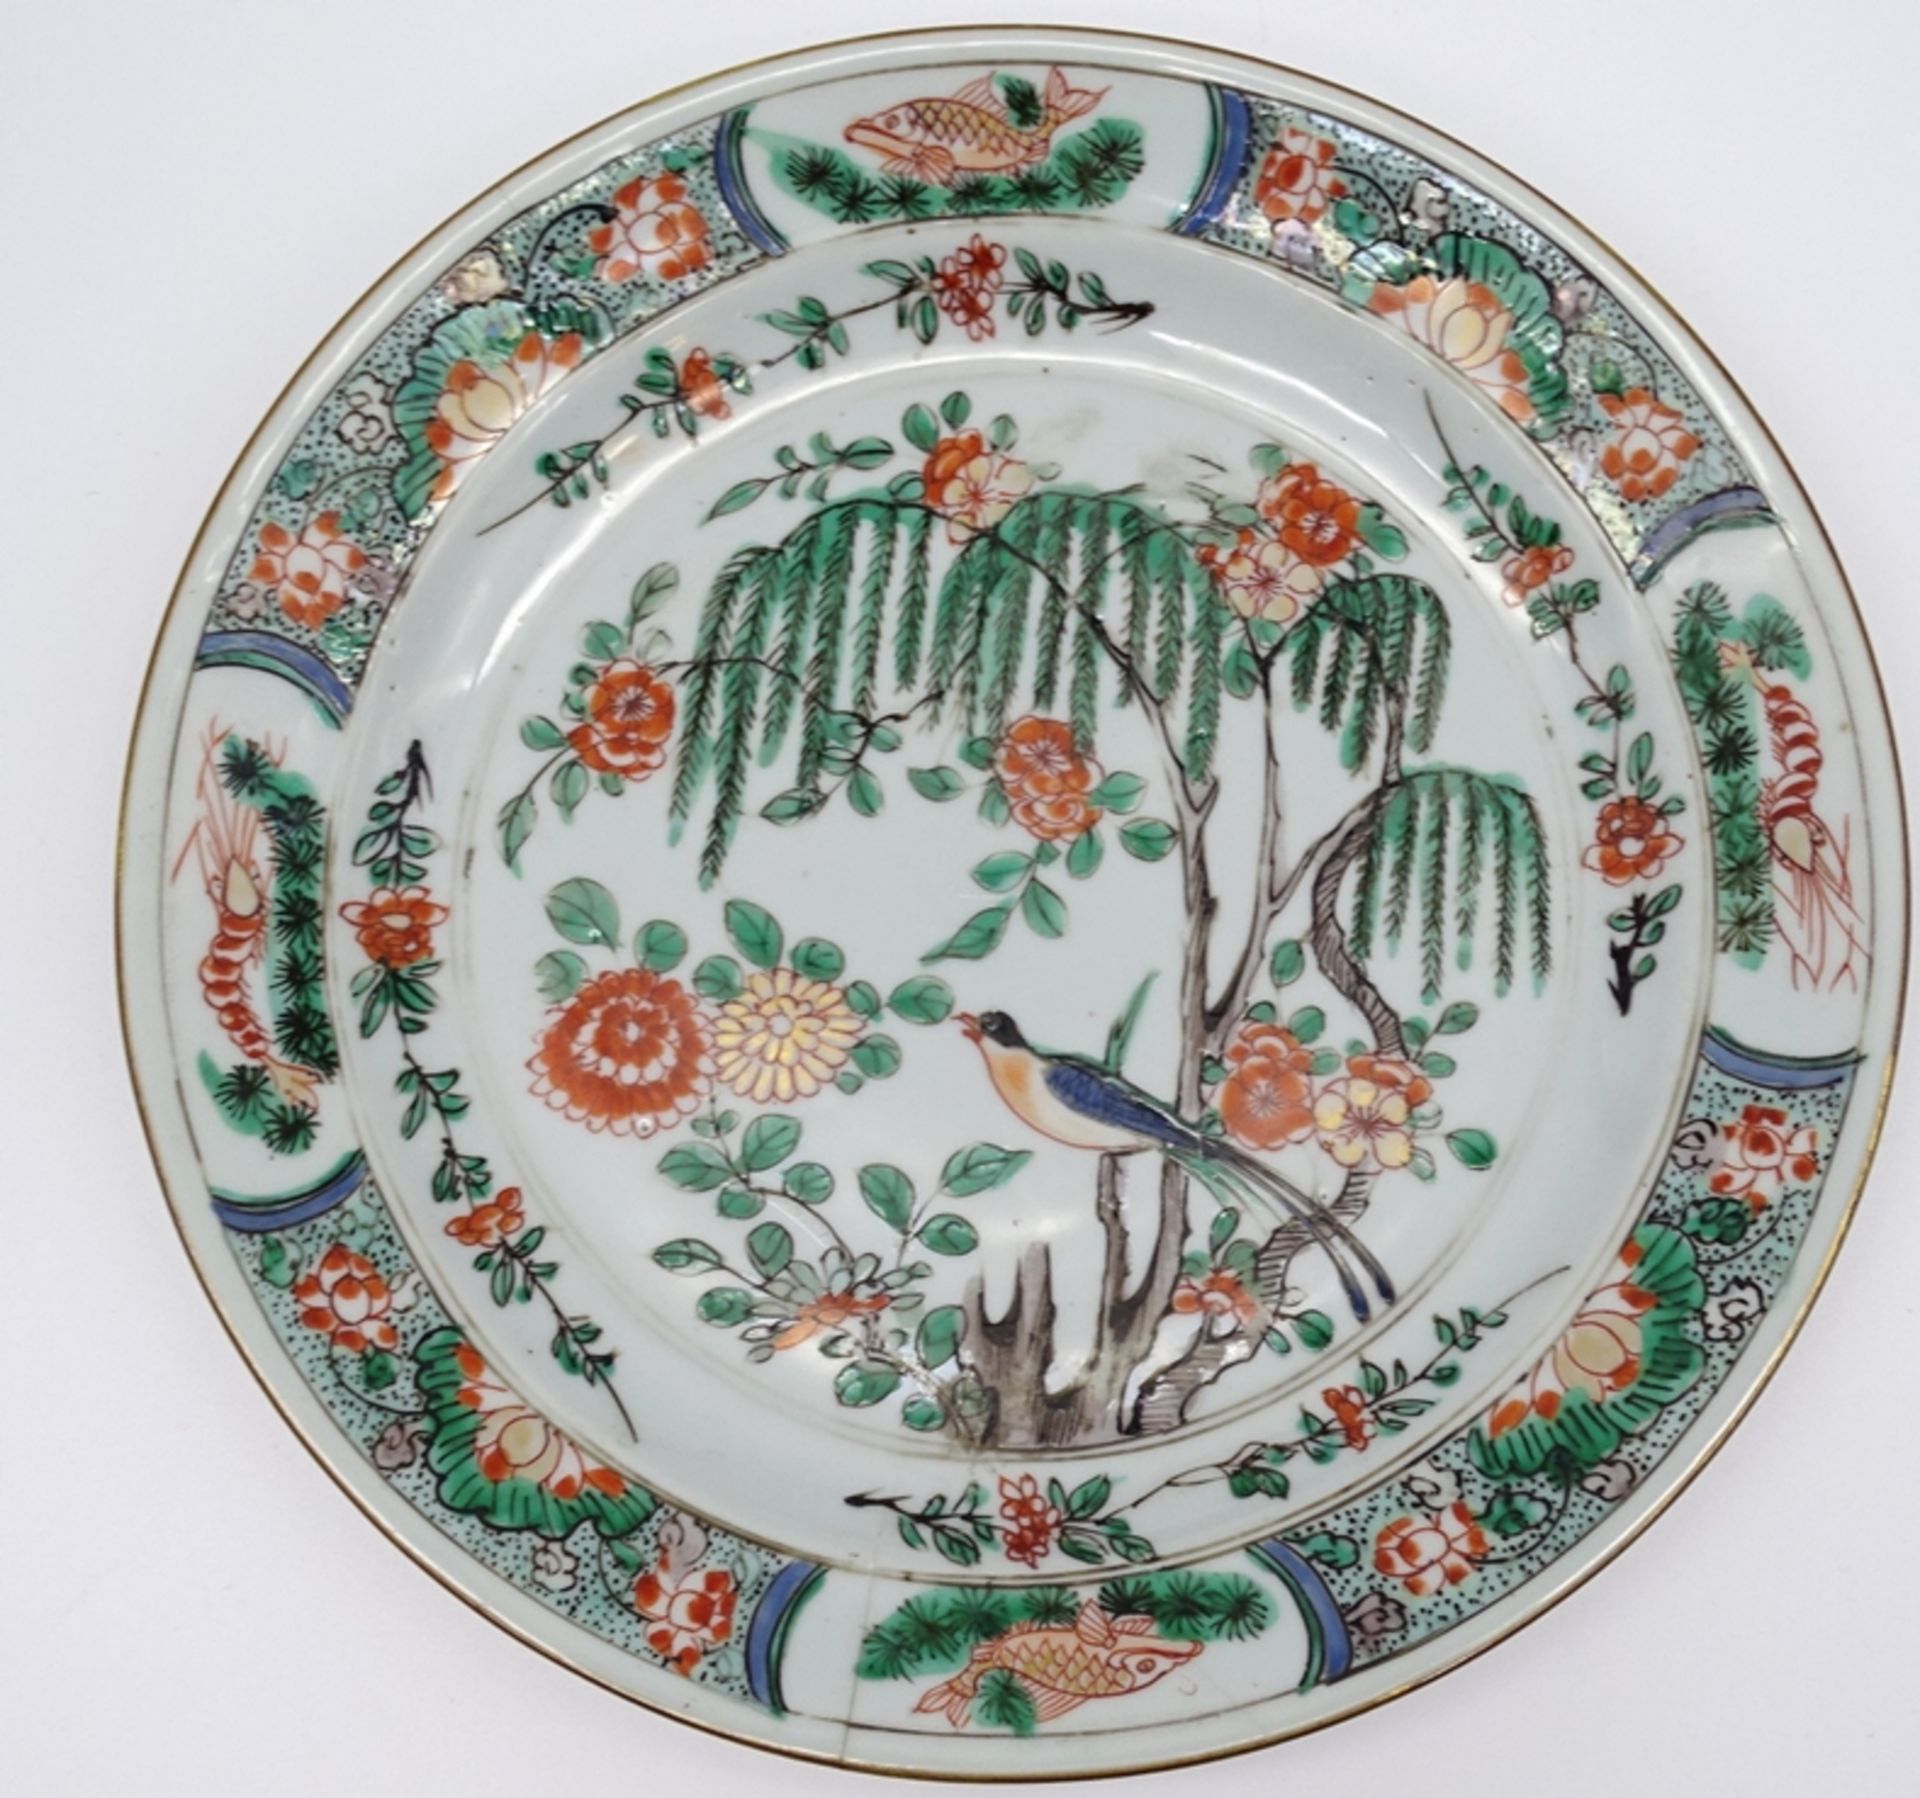 Großer Teller mit Vogel und Blumenmotiven,China, älter, D. 24cm, geklebte Stellen